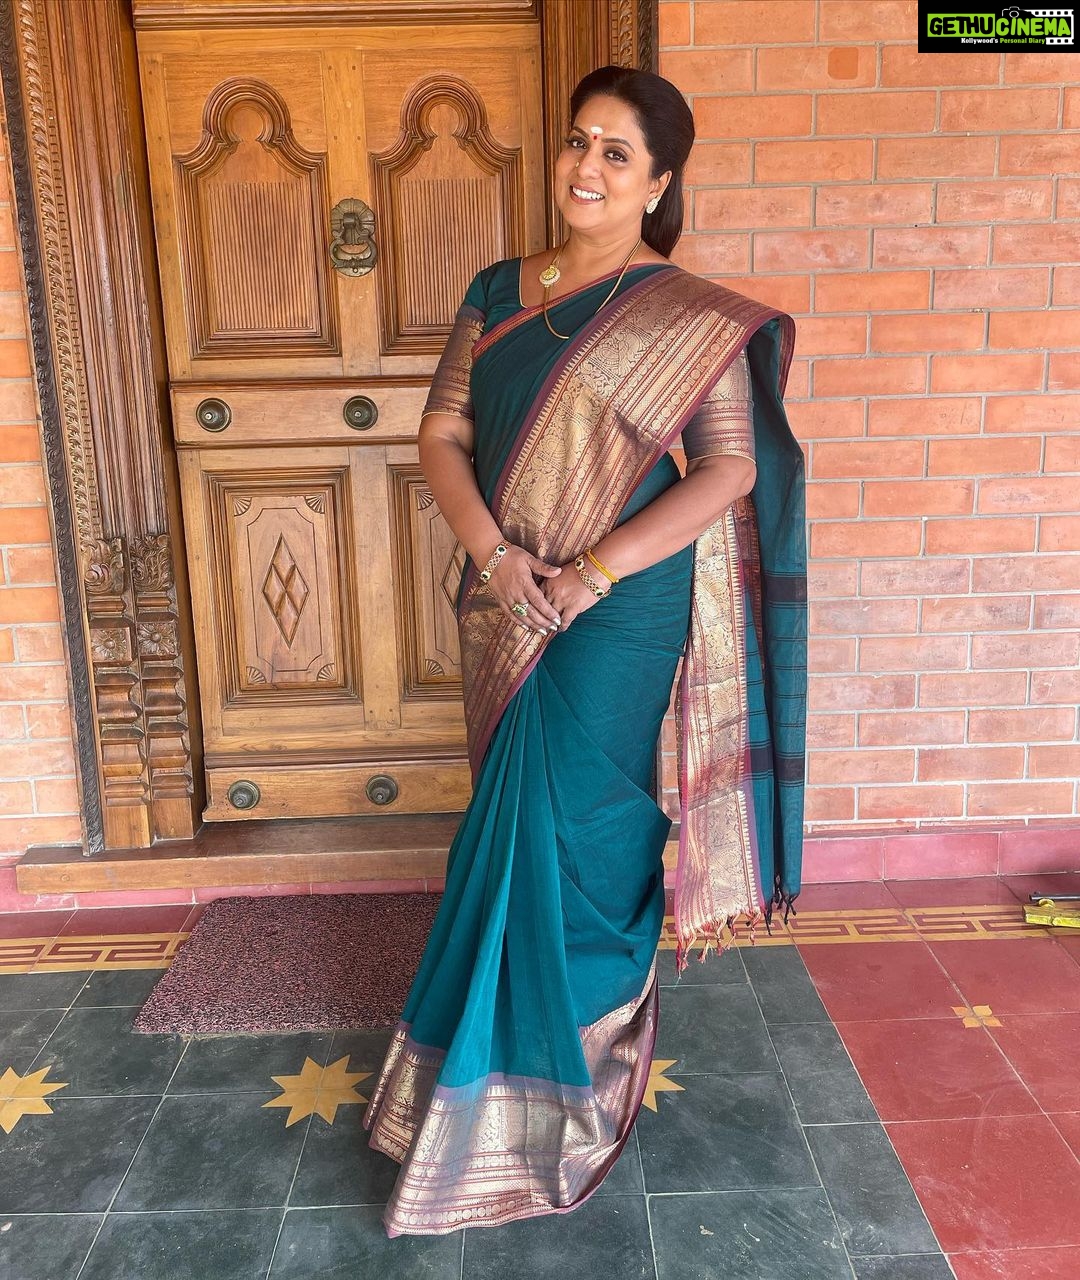 Actress Gallery - Soundarya Traditional Saree Look!😍❤️... | Facebook